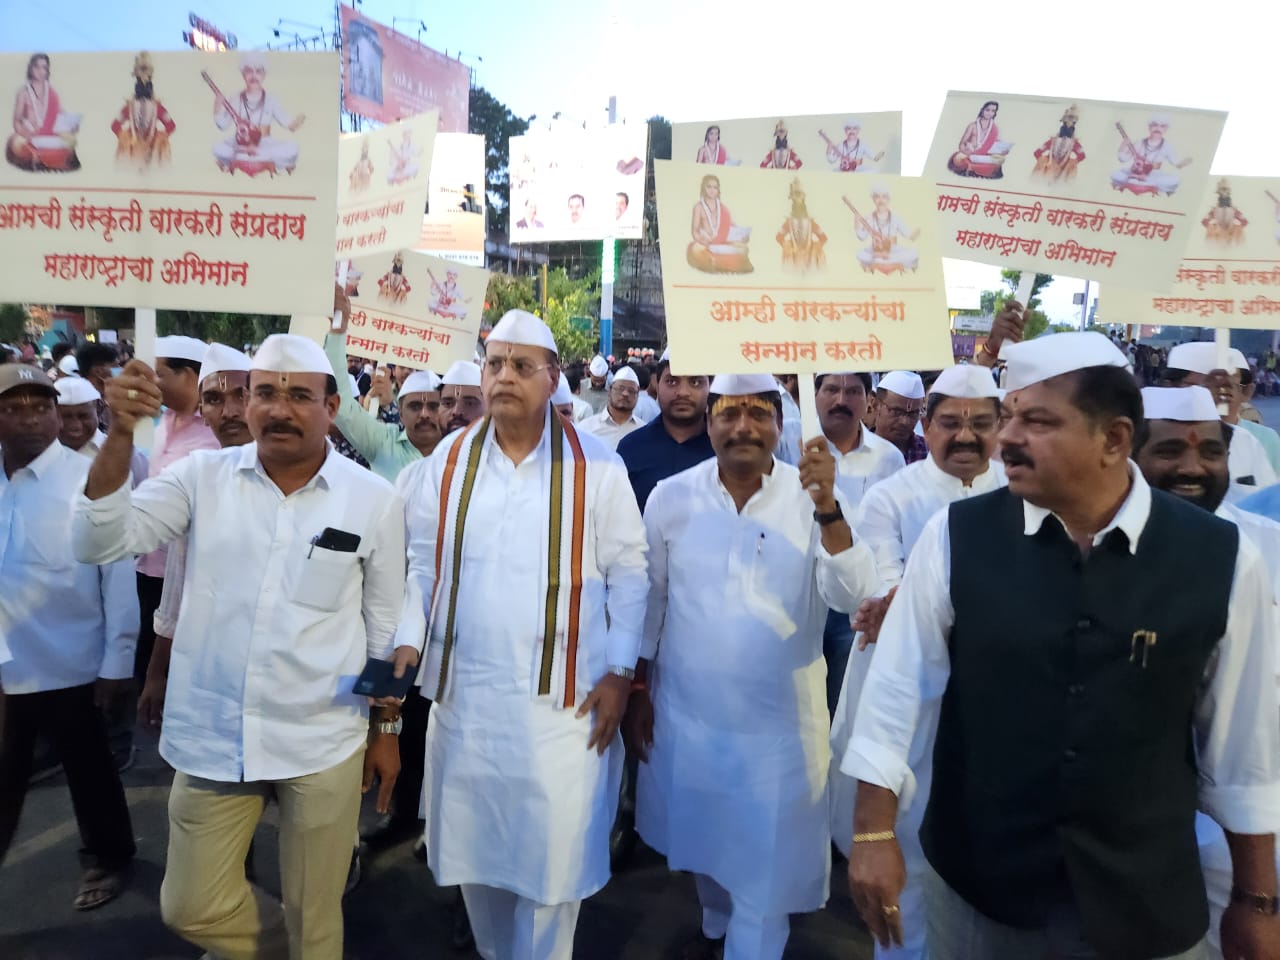 Pune Congress | Warkari Lathi-charge | वारकऱ्यांवरील लाठीहल्ल्याच्या निषेधार्थ आणि वारकऱ्यांच्या सन्मानासाठी काँग्रेस तर्फे सन्मान दिंडी